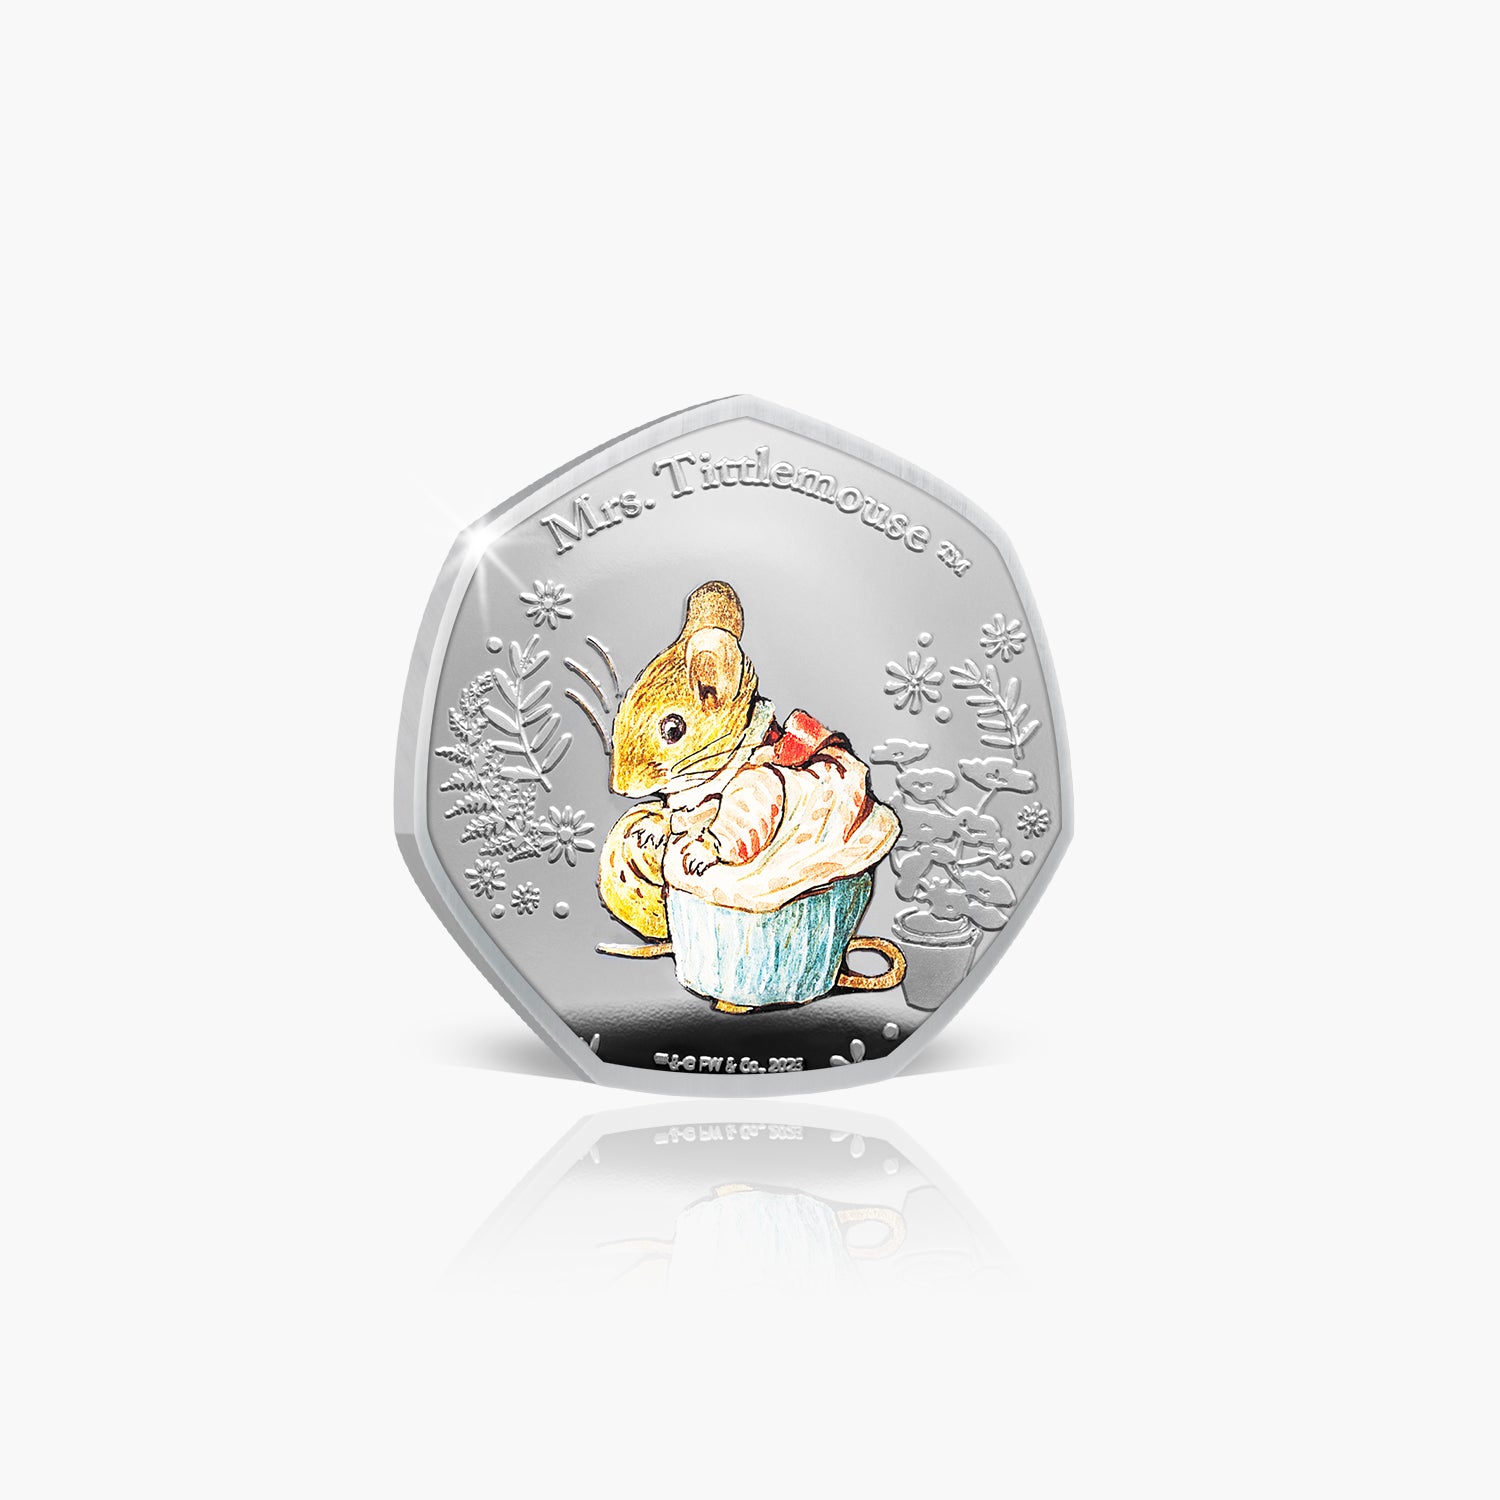 Collection de pièces Le monde de Peter Rabbit 2023 - Mme Tittlemouse Coin